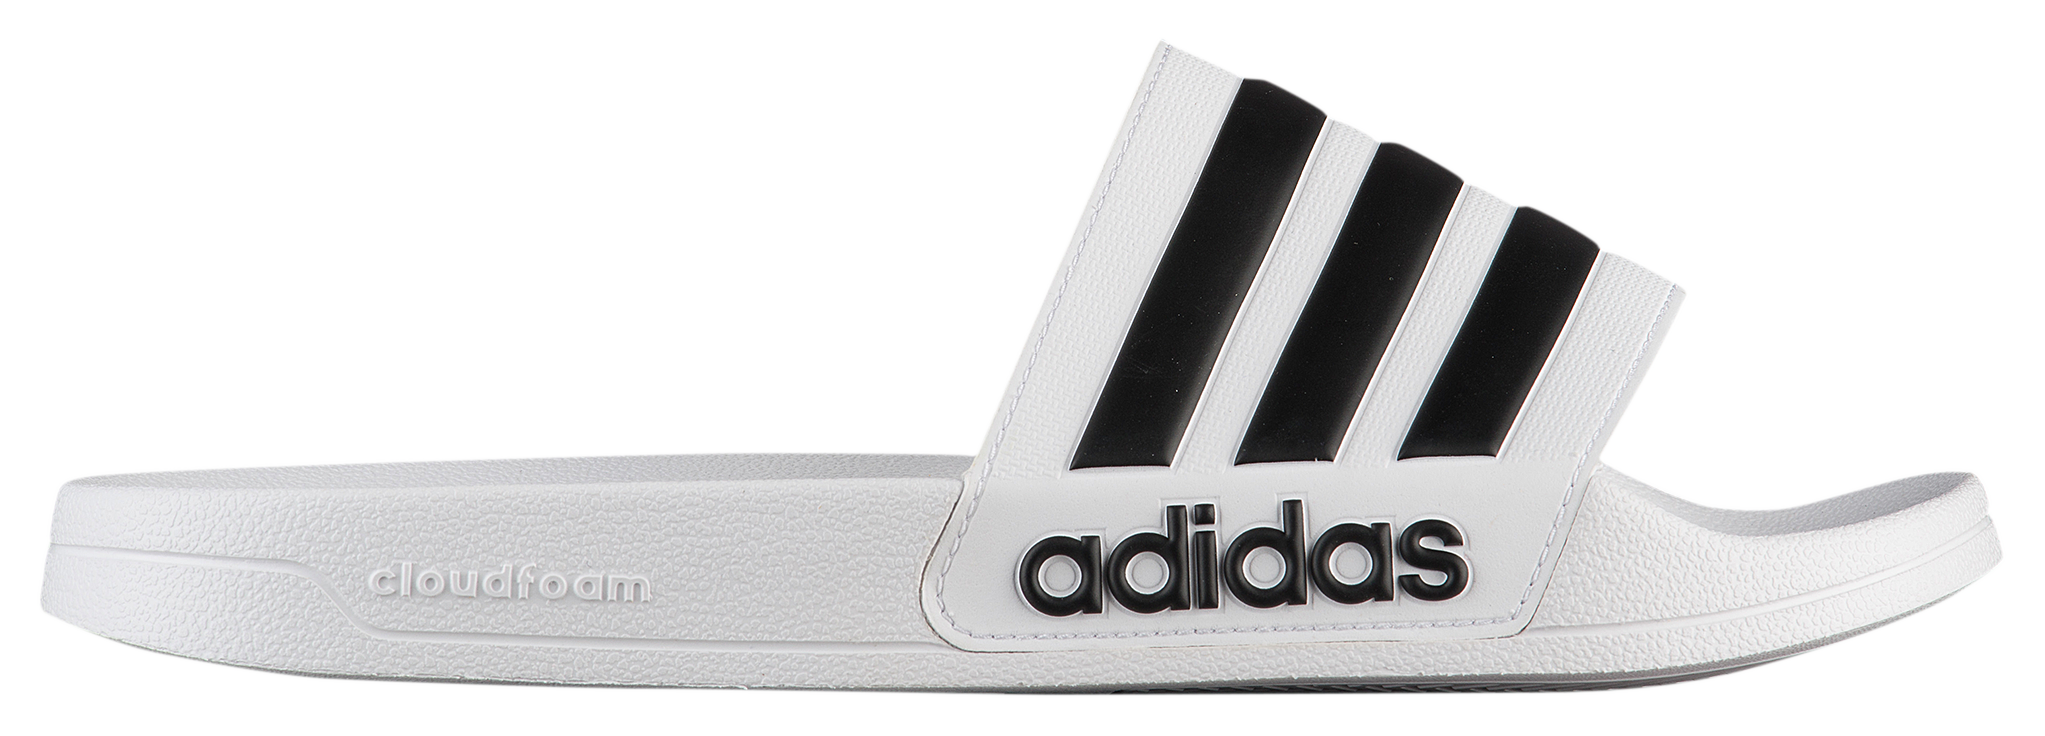 foot locker adidas slides